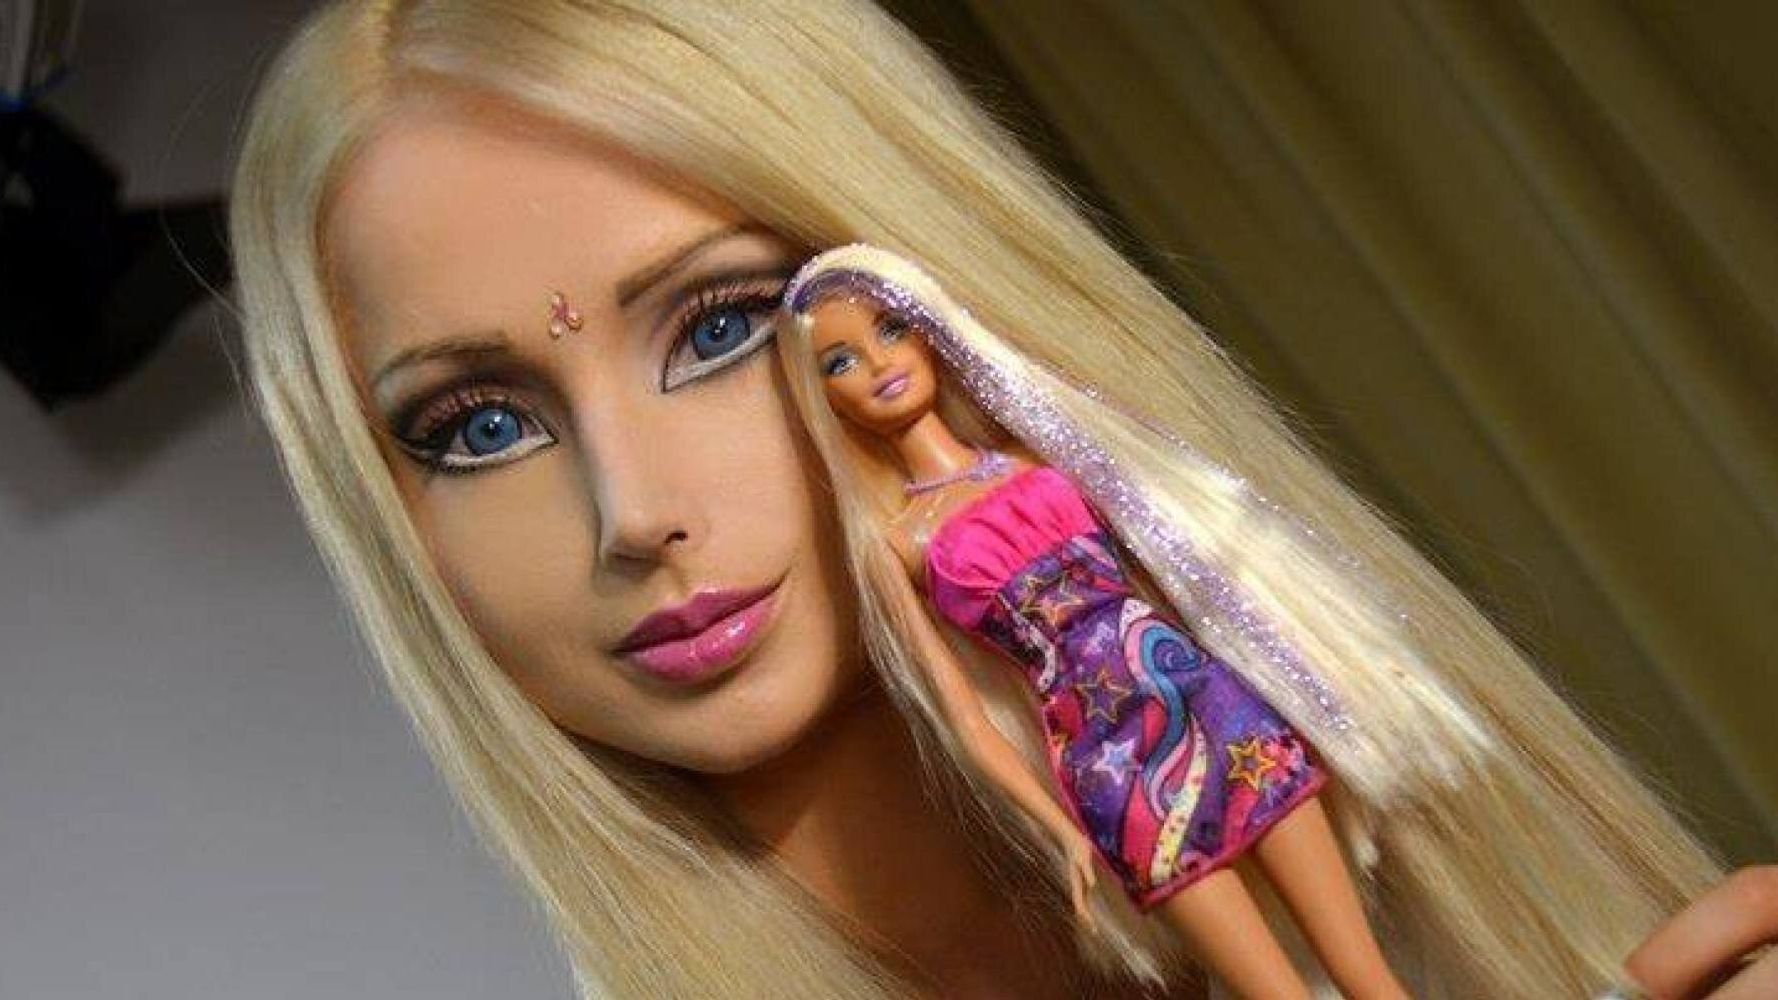 mel at tilbagetrække Afspejling Valeria Lukyanova, Human Barbie, Posts No Make-Up Selfie - Would You  Recognise Her? | HuffPost UK Life